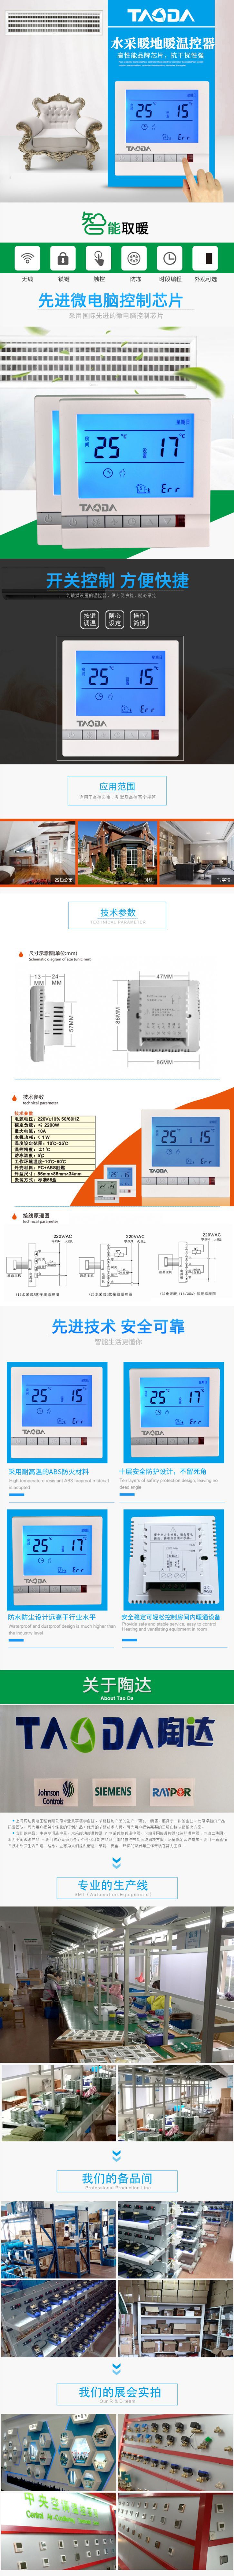 水地暖温控器 地暖温控器 定时开关机 智能周编程 特价示例图1